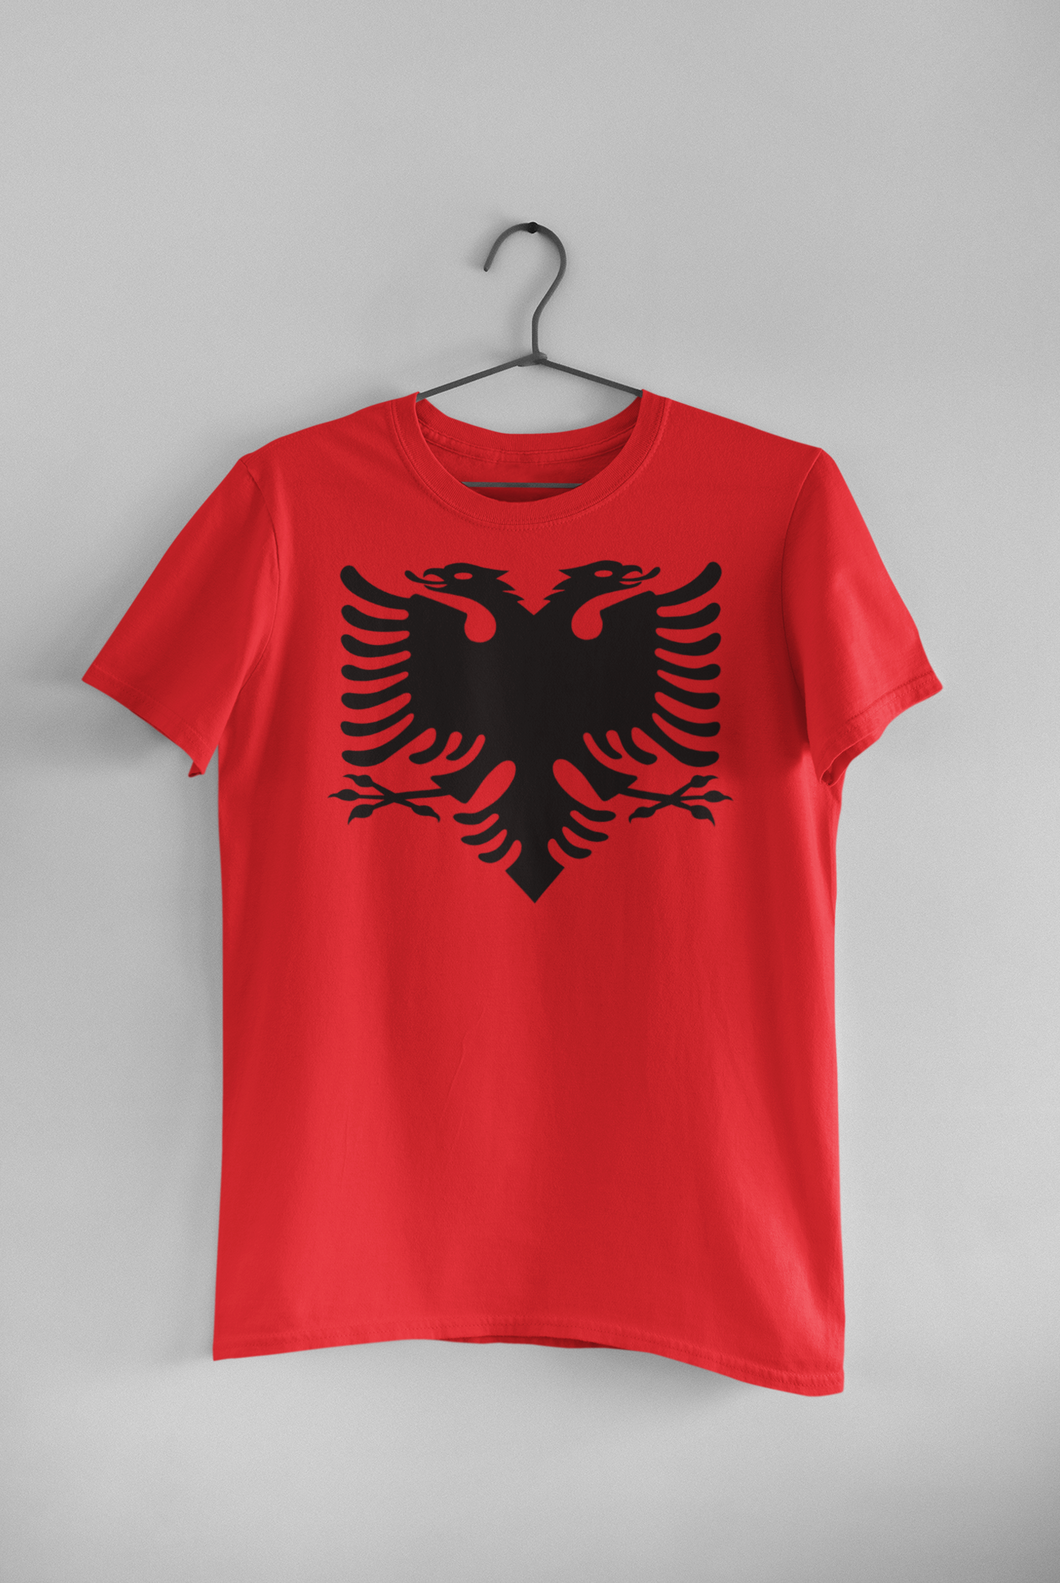 Albanian eagle t-shirt